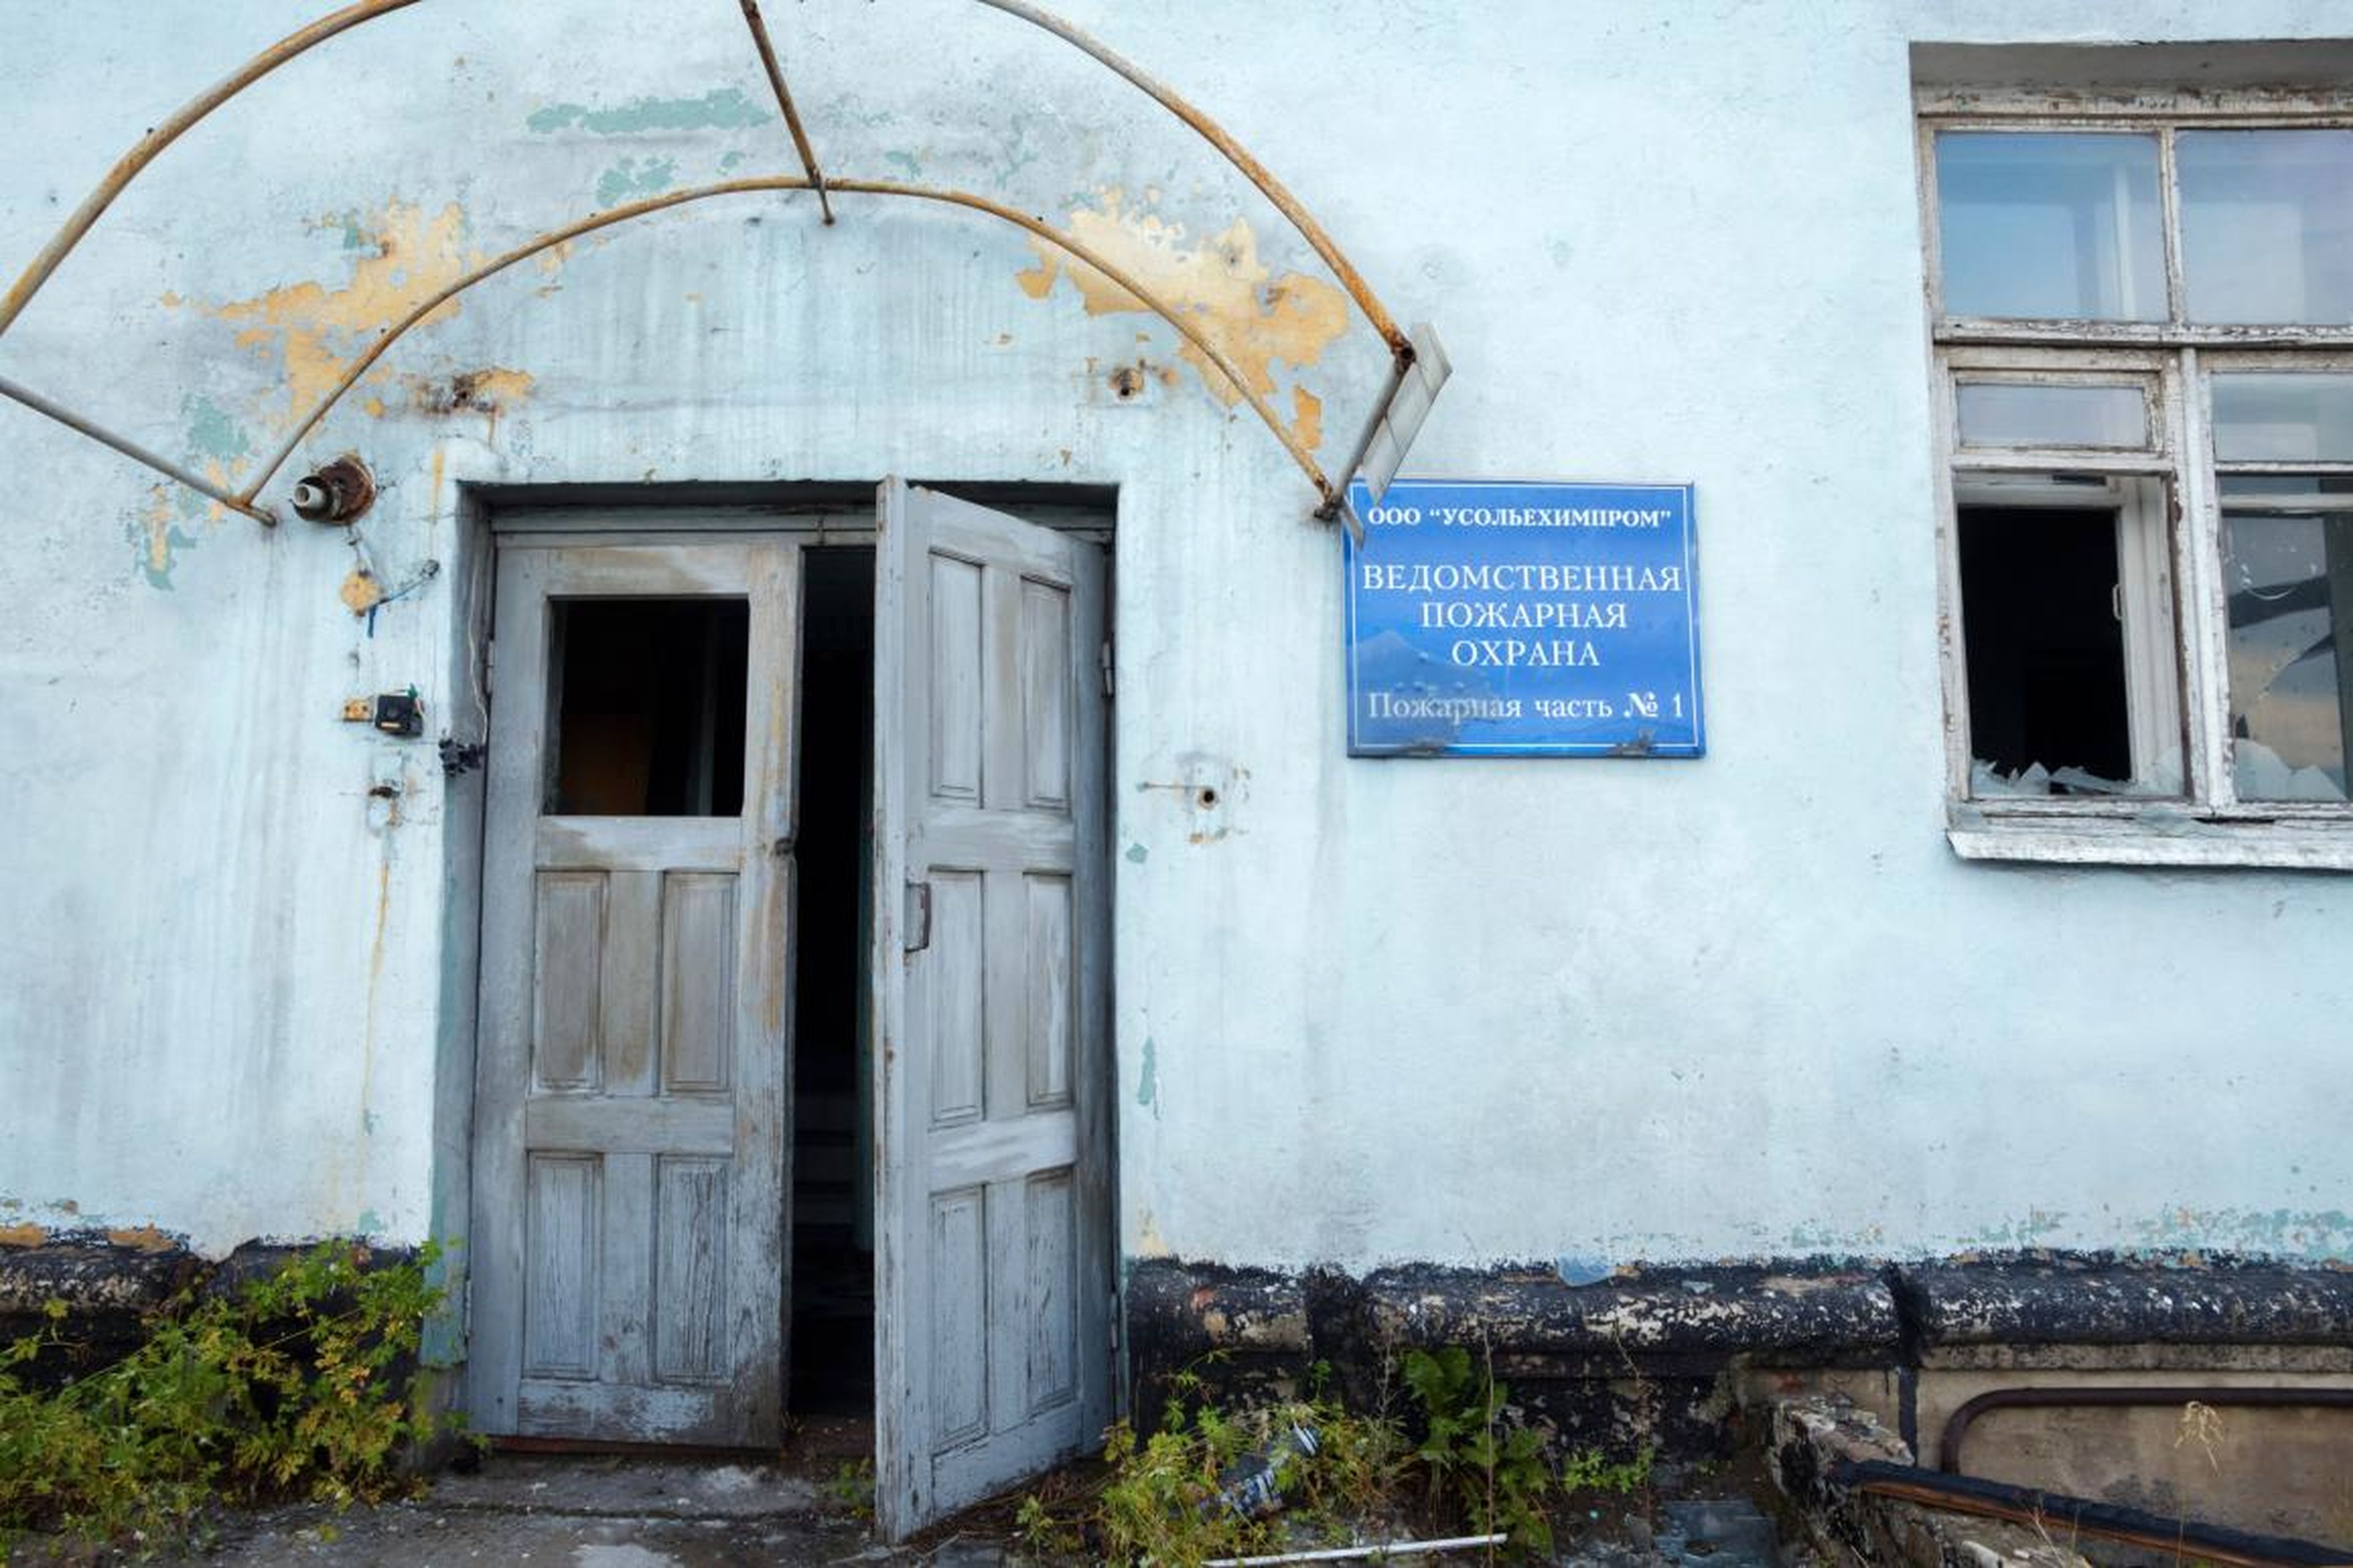 Rosprirodnadzor quiere crear un programa estatal para limpiar el complejo de Usolyekhimprom.